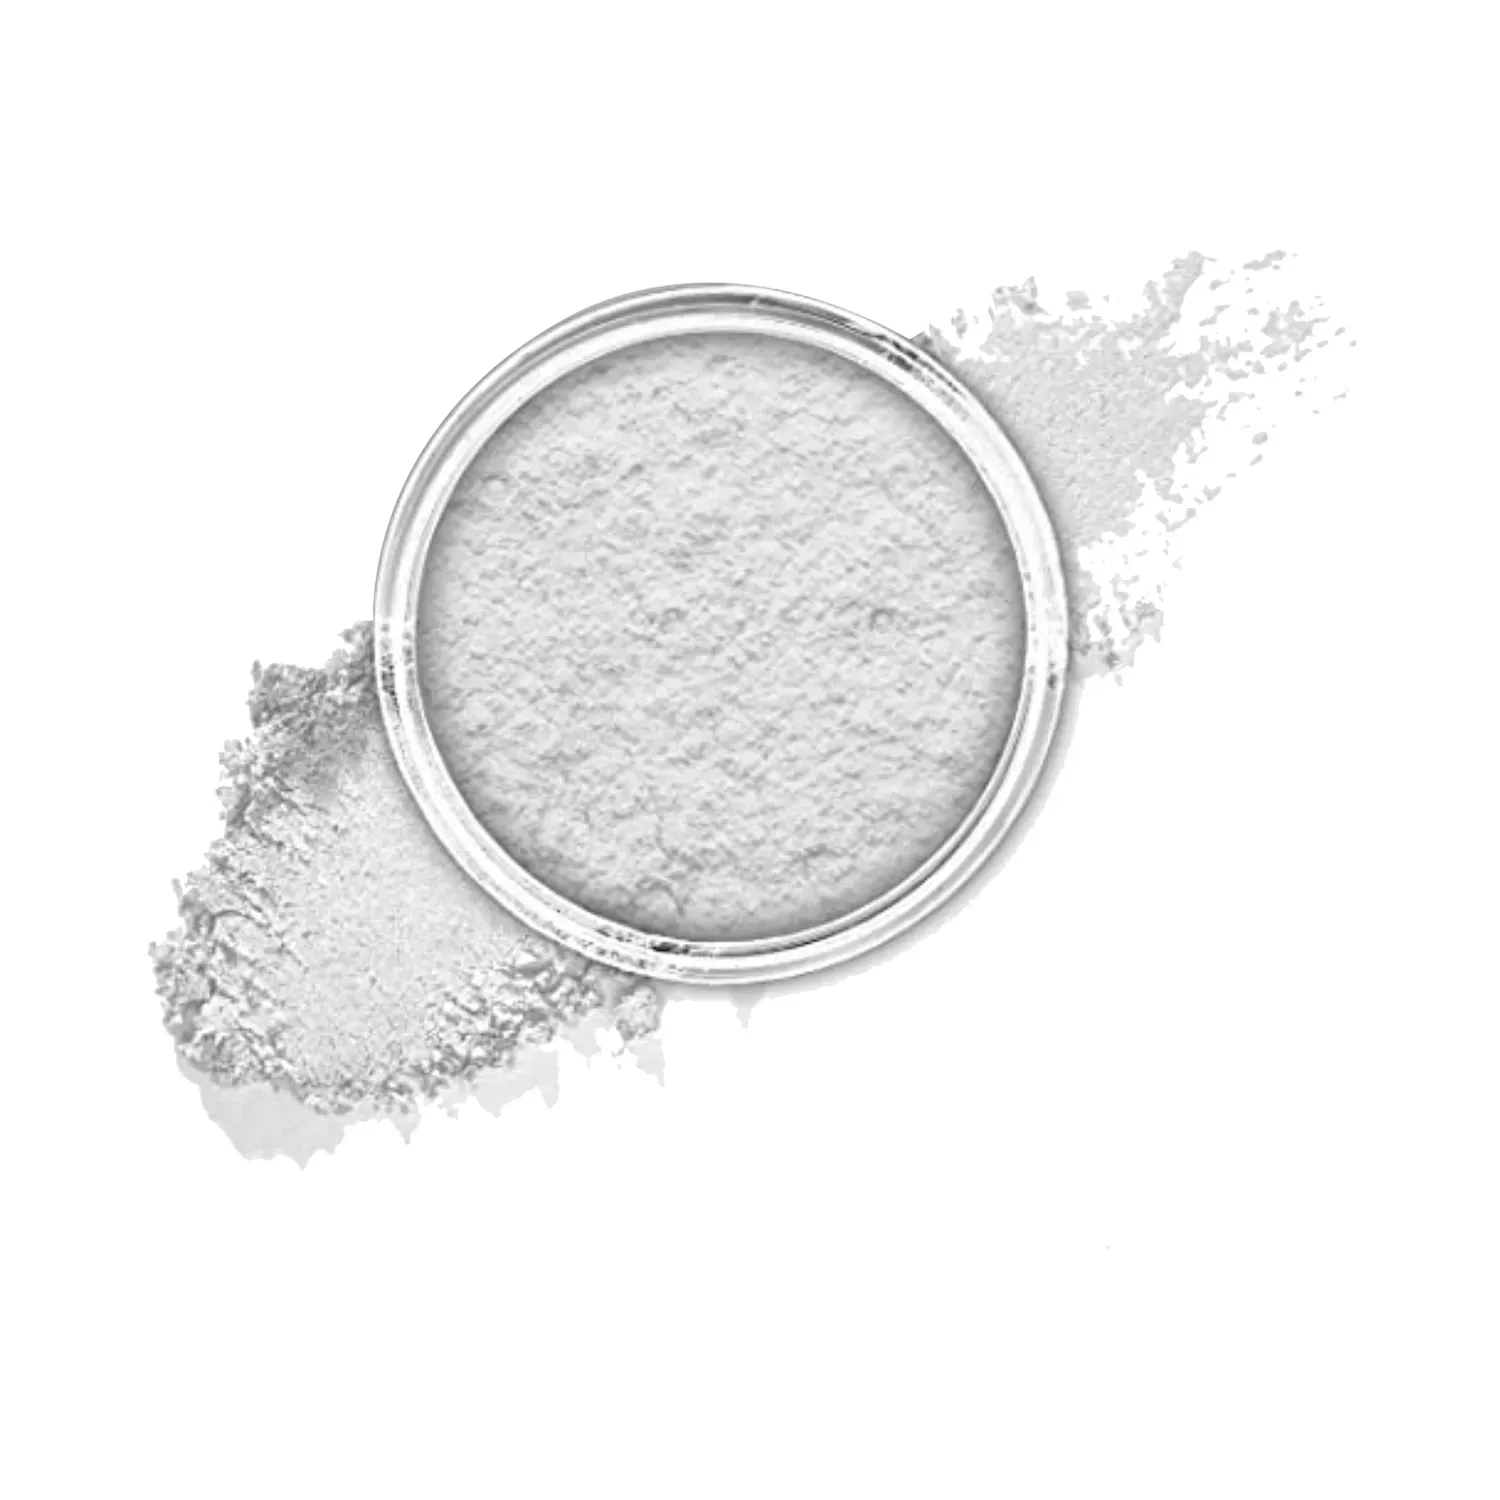 RENEE | RENEE Face Base Loose Powder - Translucent (7g)